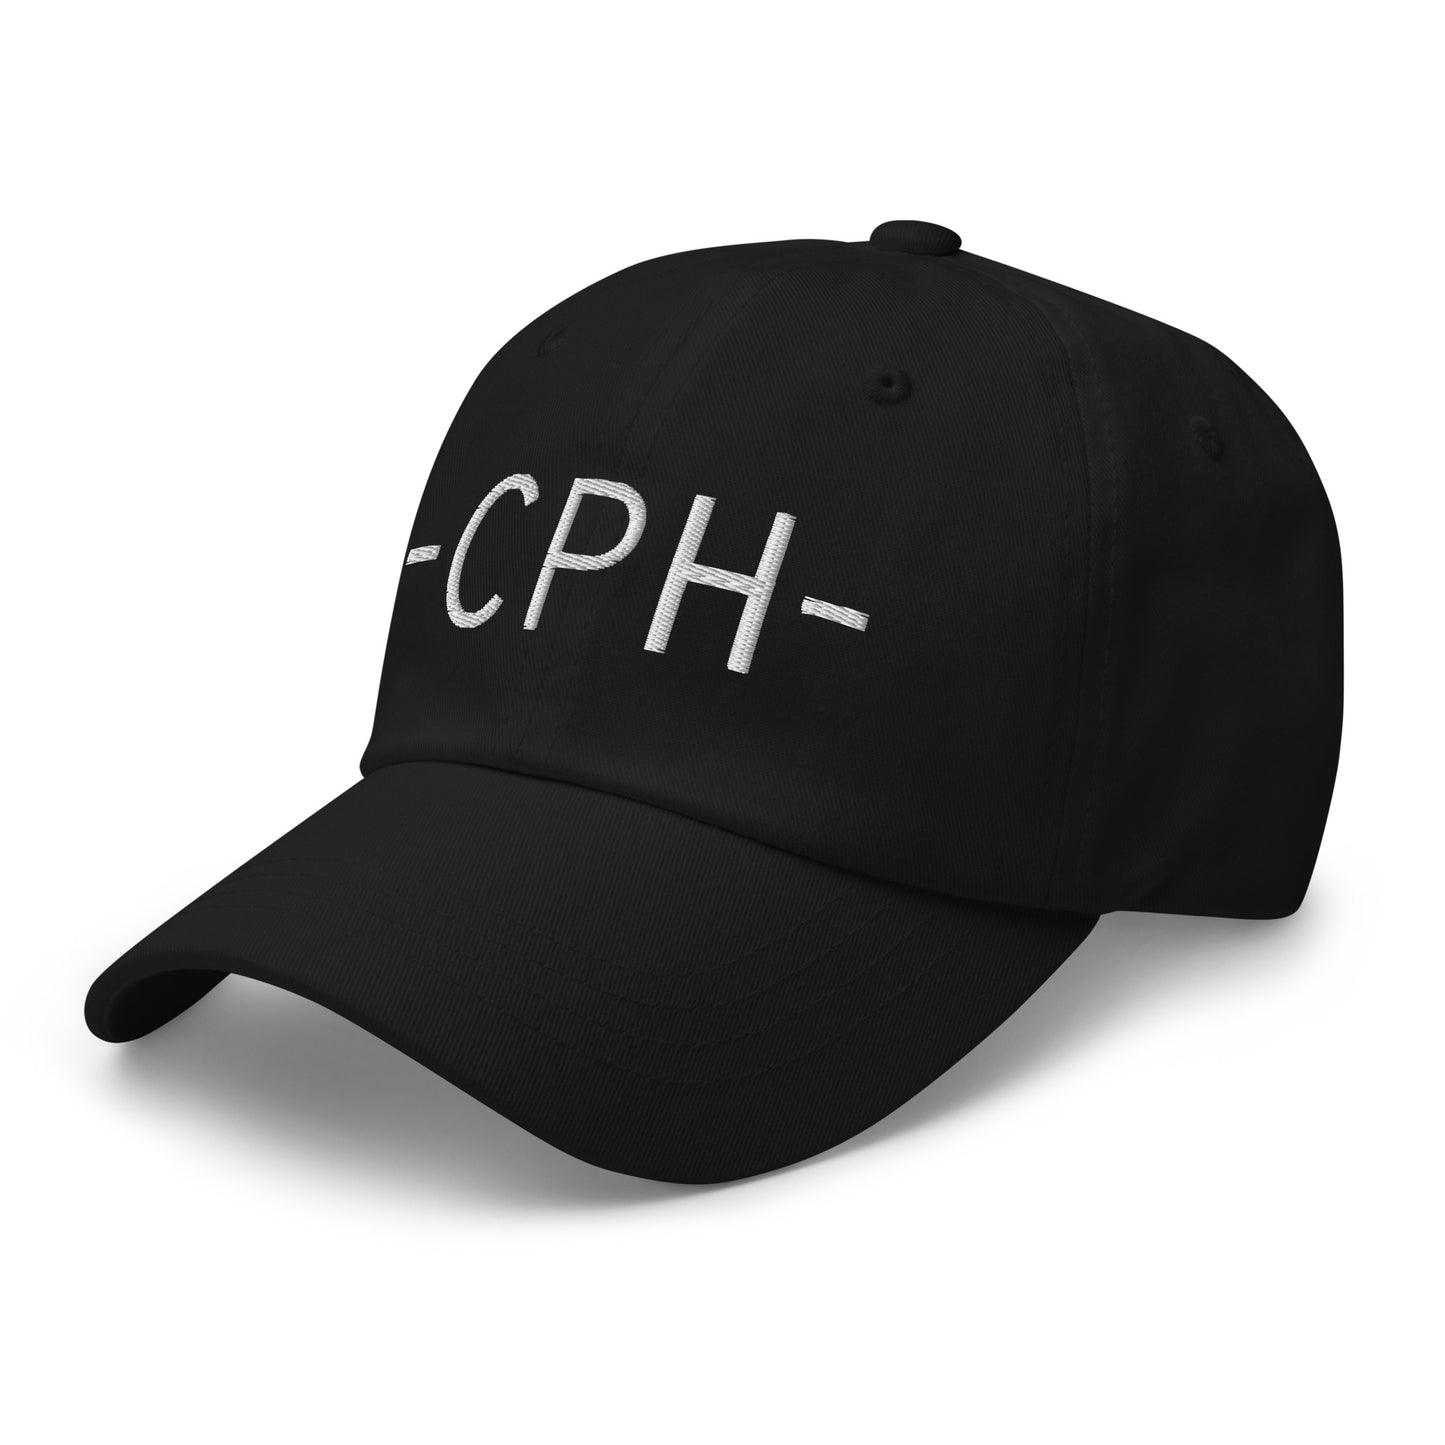 Souvenir Baseball Cap - White • CPH Copenhagen • YHM Designs - Image 13